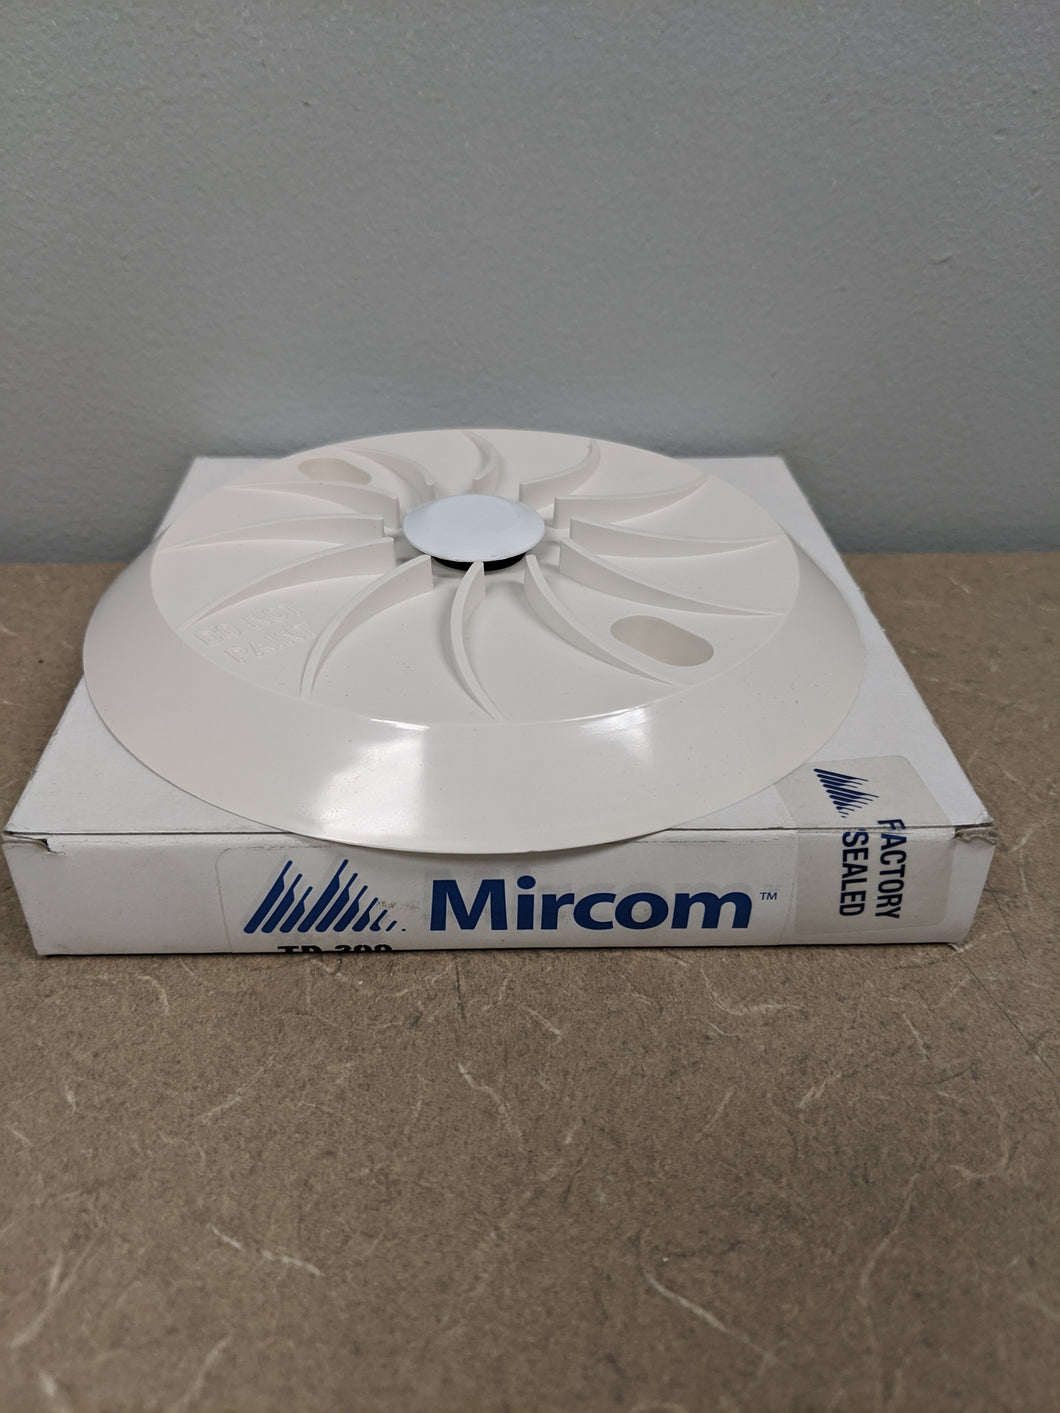 Mircom TD 200 Fixed Temperature 200°F Self Restoring Heat Detector